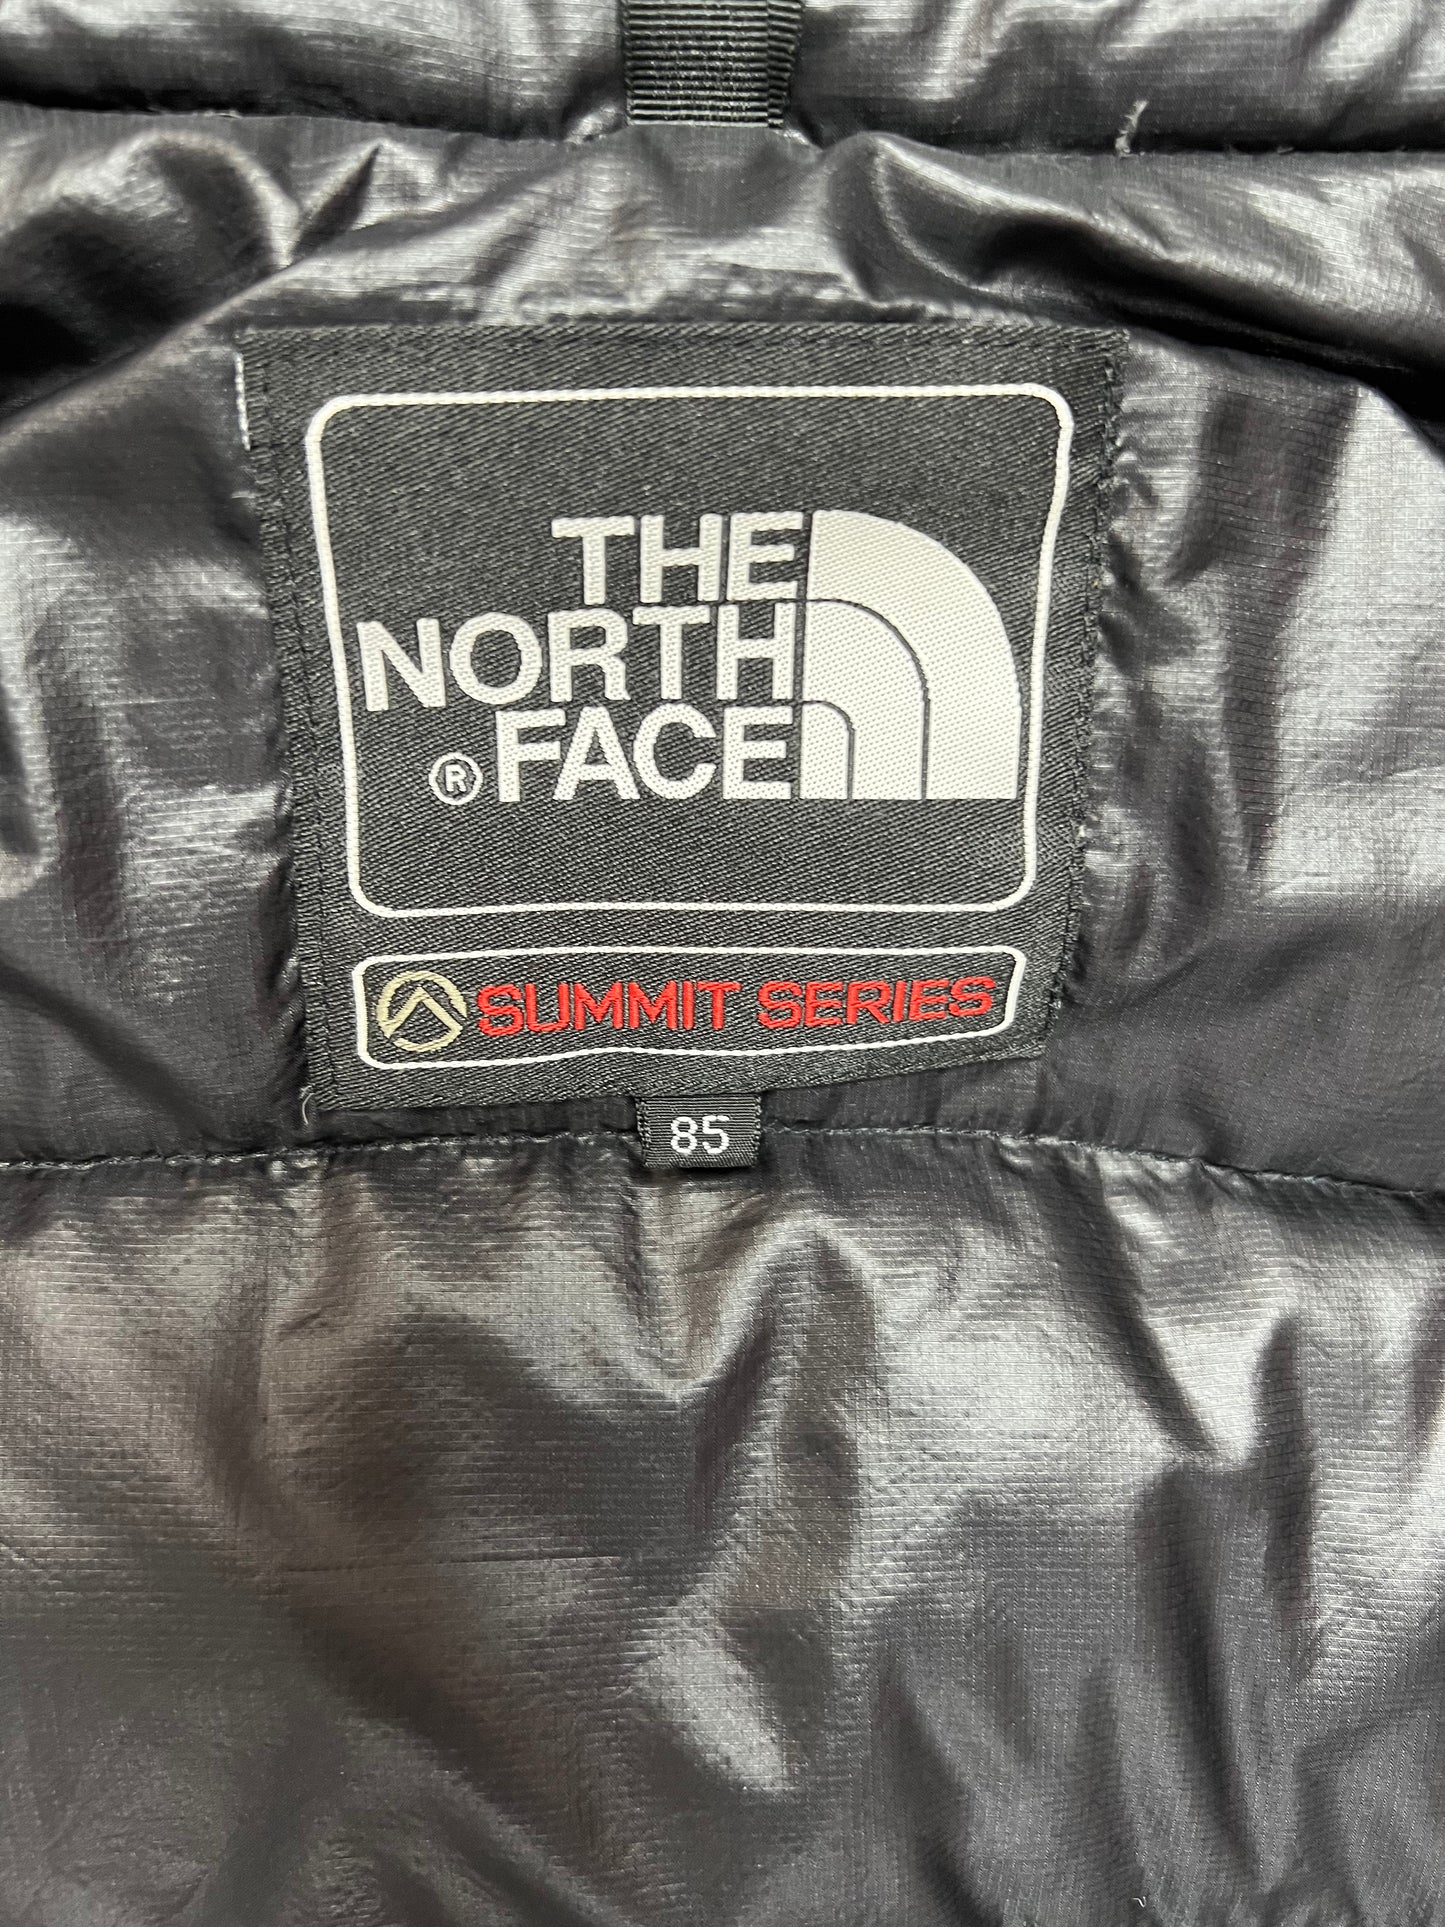 10046【THE NORTH FACE】ザノースフェイス メンズ サミットシリーズ アコンカグア ダウンジャケット ブラック 85